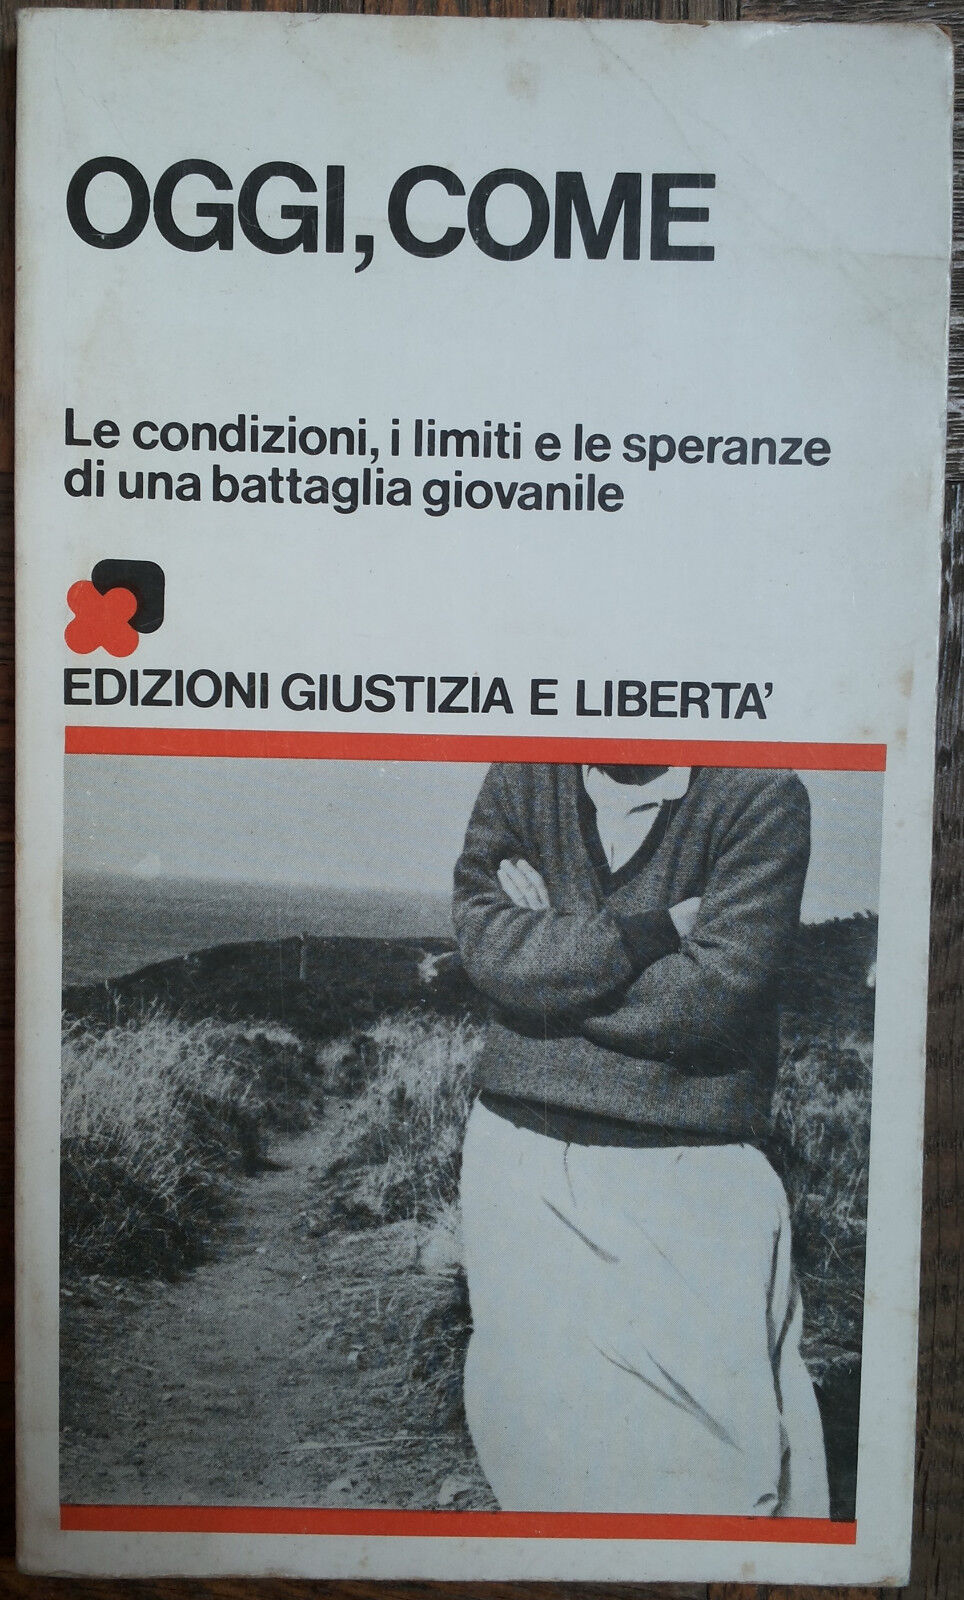 Oggi, come - AA.VV. - Edizioni Giustizia e Libert?,1981 - R